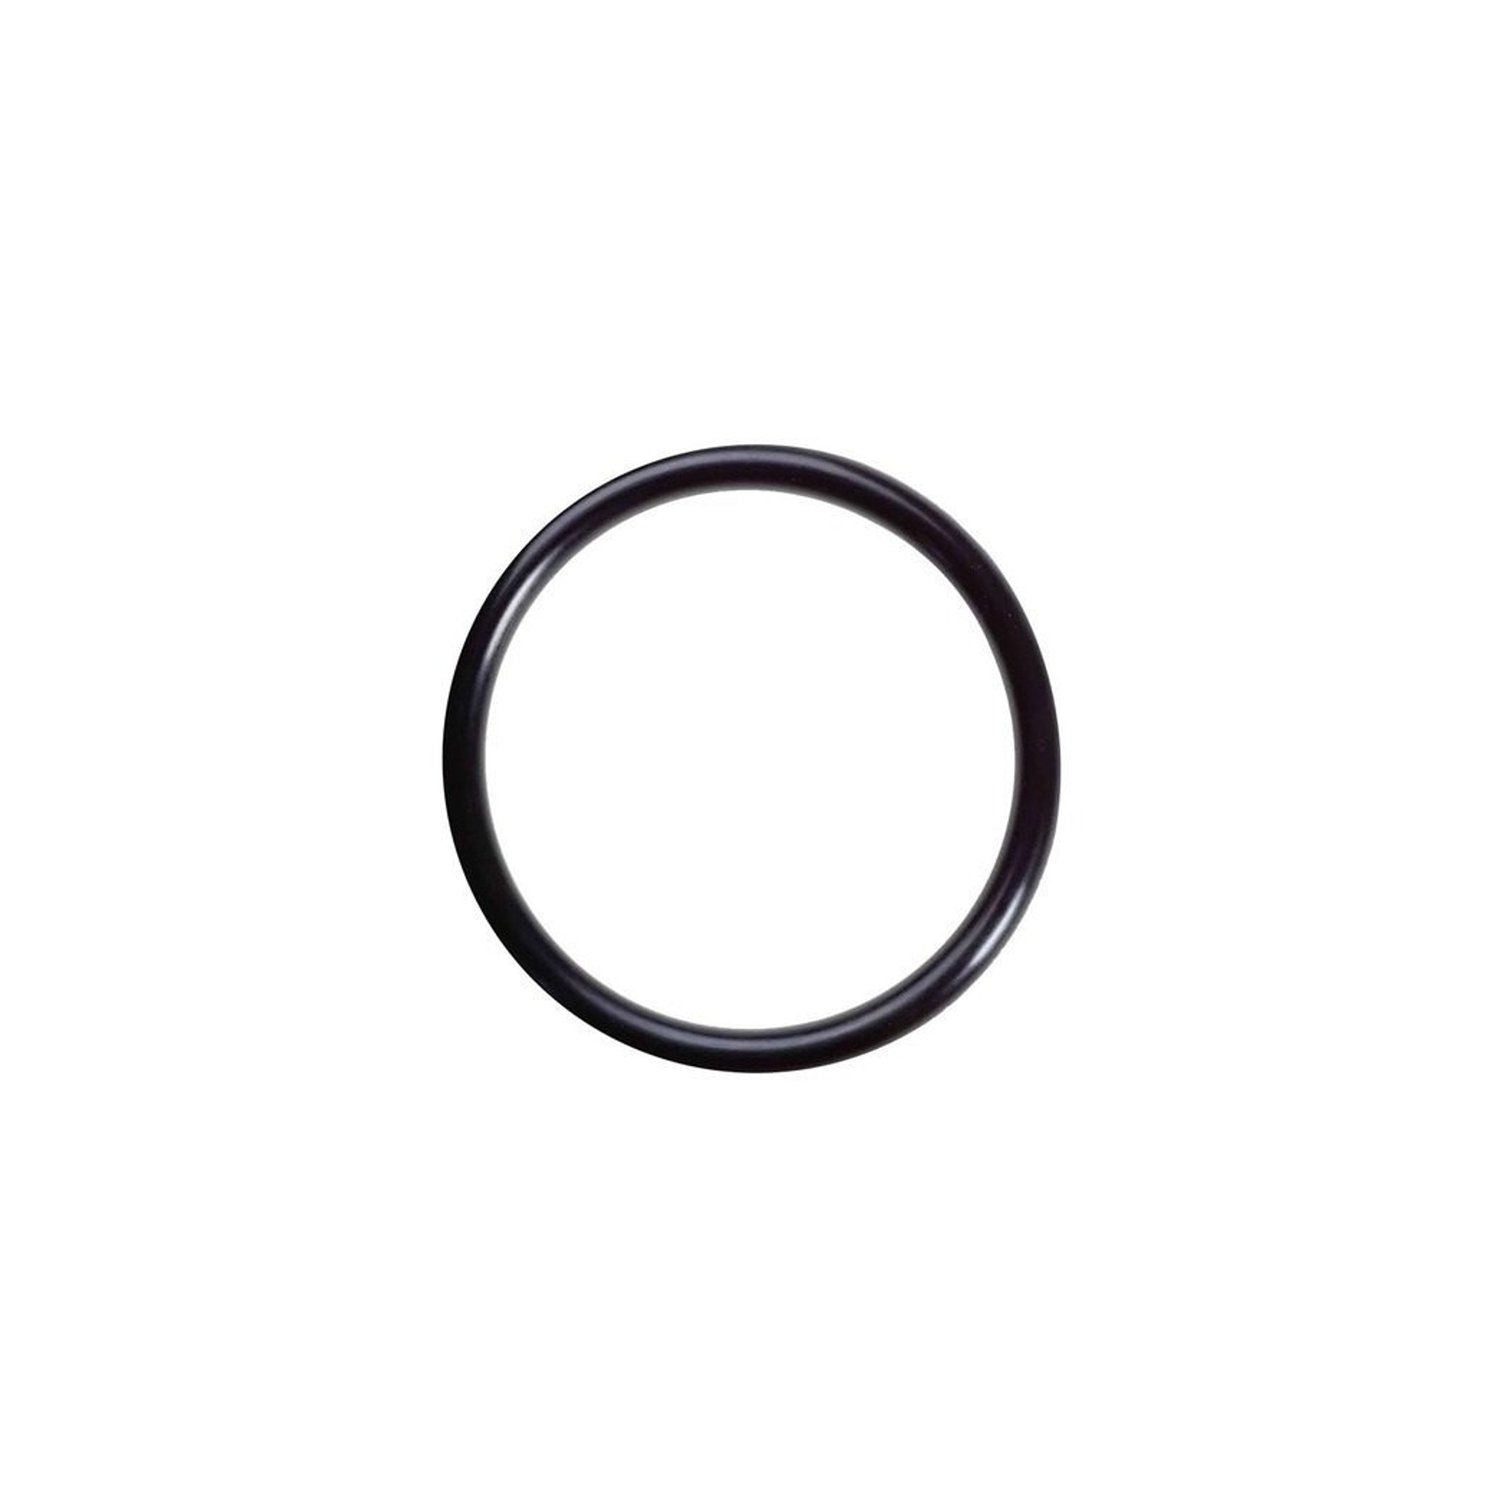 O-ringi 8.8 x 1.9 mm 1 szt. z gumy HNBR, do klimatyzatorów R12 i R134a